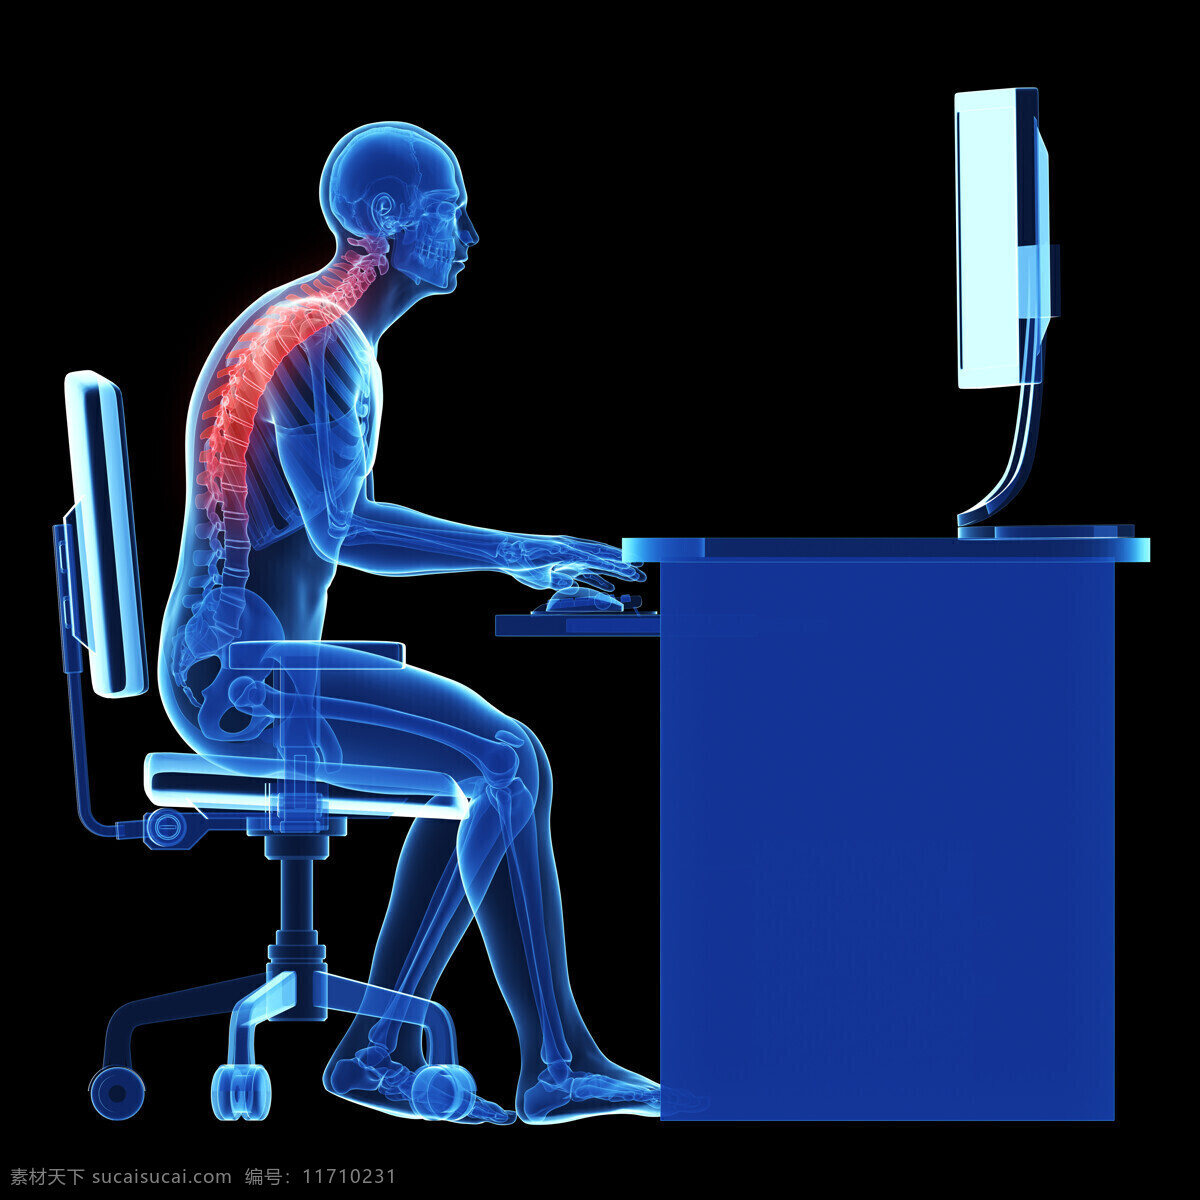 工作 中 男性 脊柱 骨骼 变形 工作中的男性 男性骨骼器官 脊柱器官 脊柱骨骼变形 男性人体器官 医疗科学 医学 医疗护理 现代科技